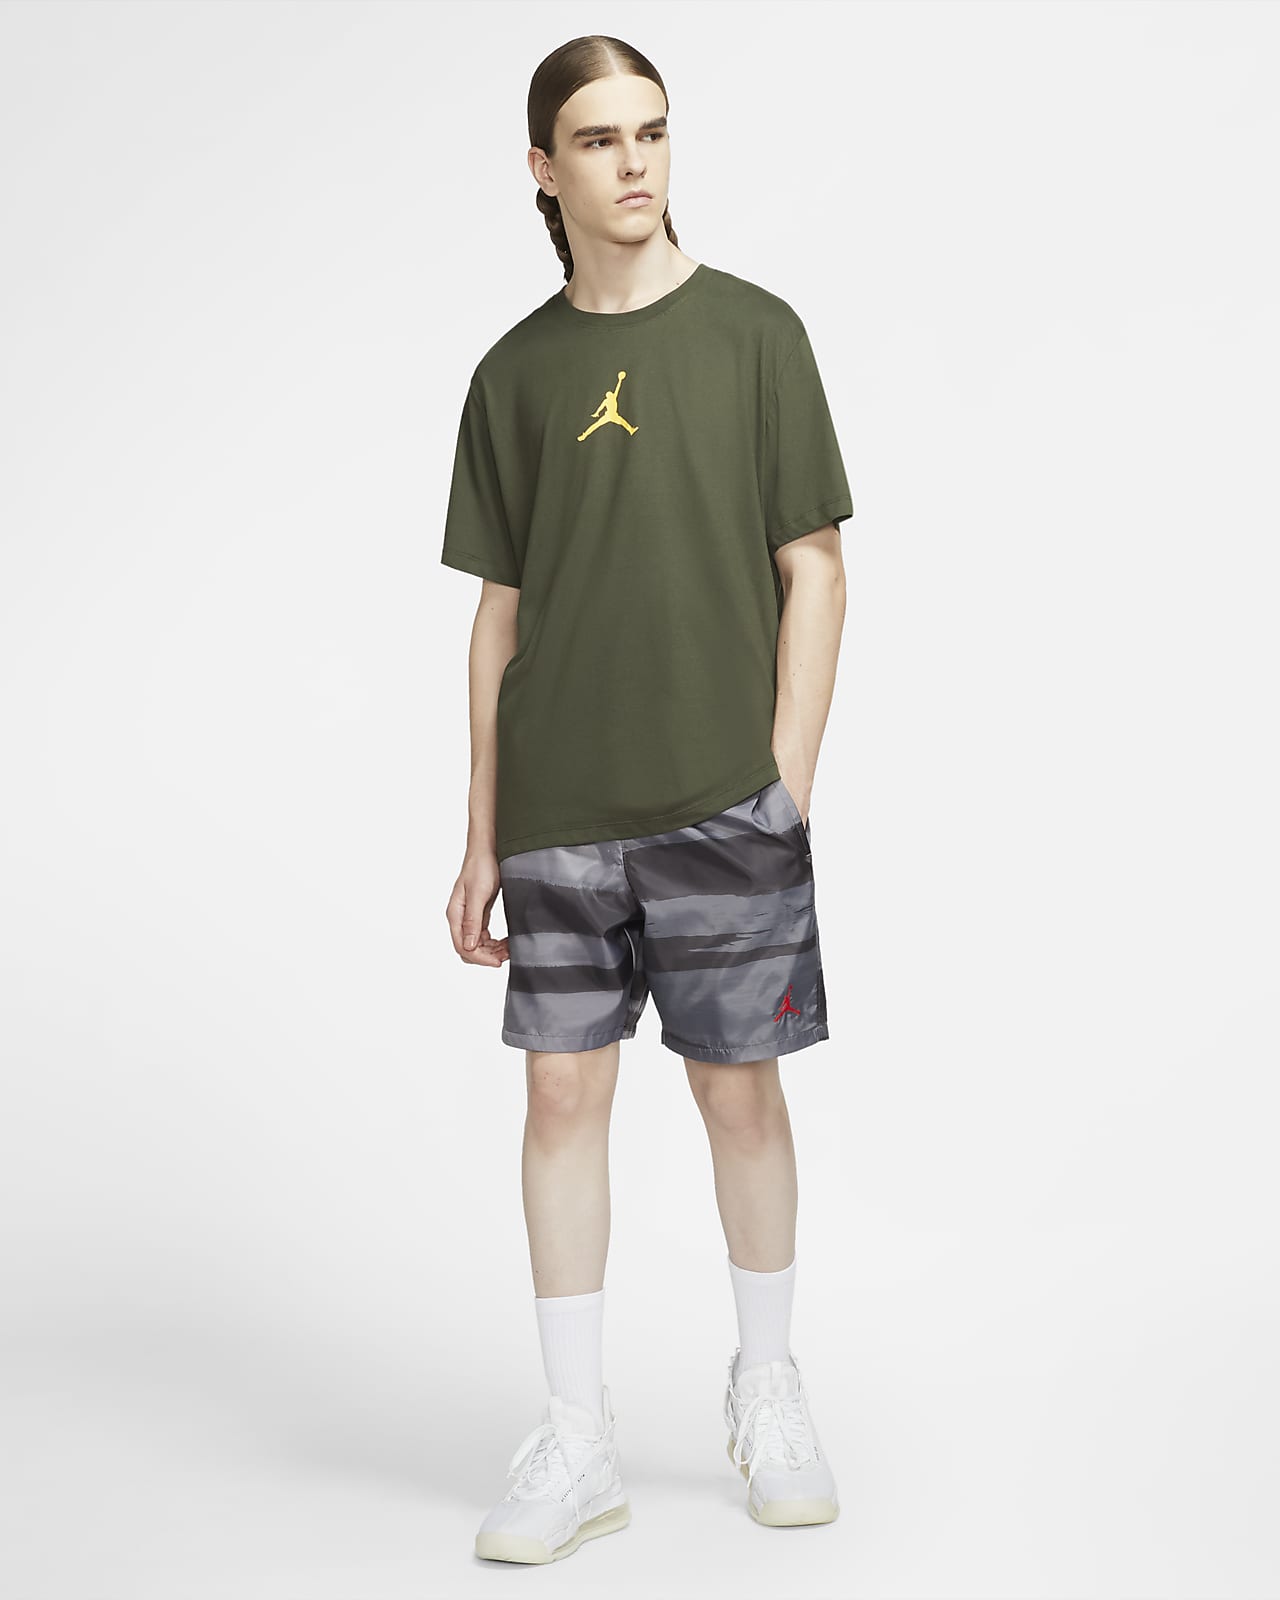 Jordan Legacy AJ11 Men's Printed Shorts 